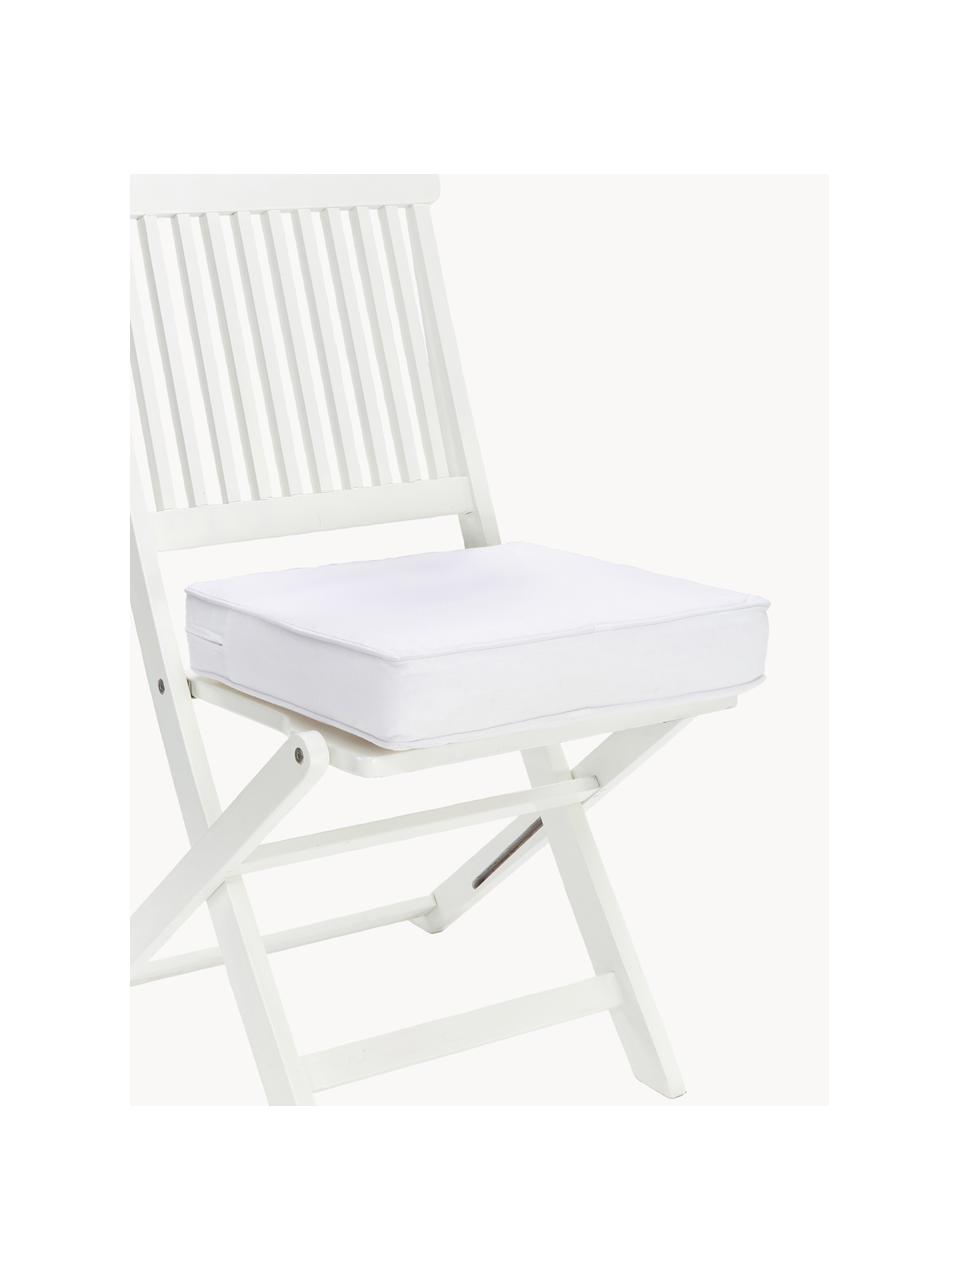 Hohes Sitzkissen Zoey, 2 Stück, Bezug: 100 % Baumwolle, Weiss, B 40 x L 40 cm